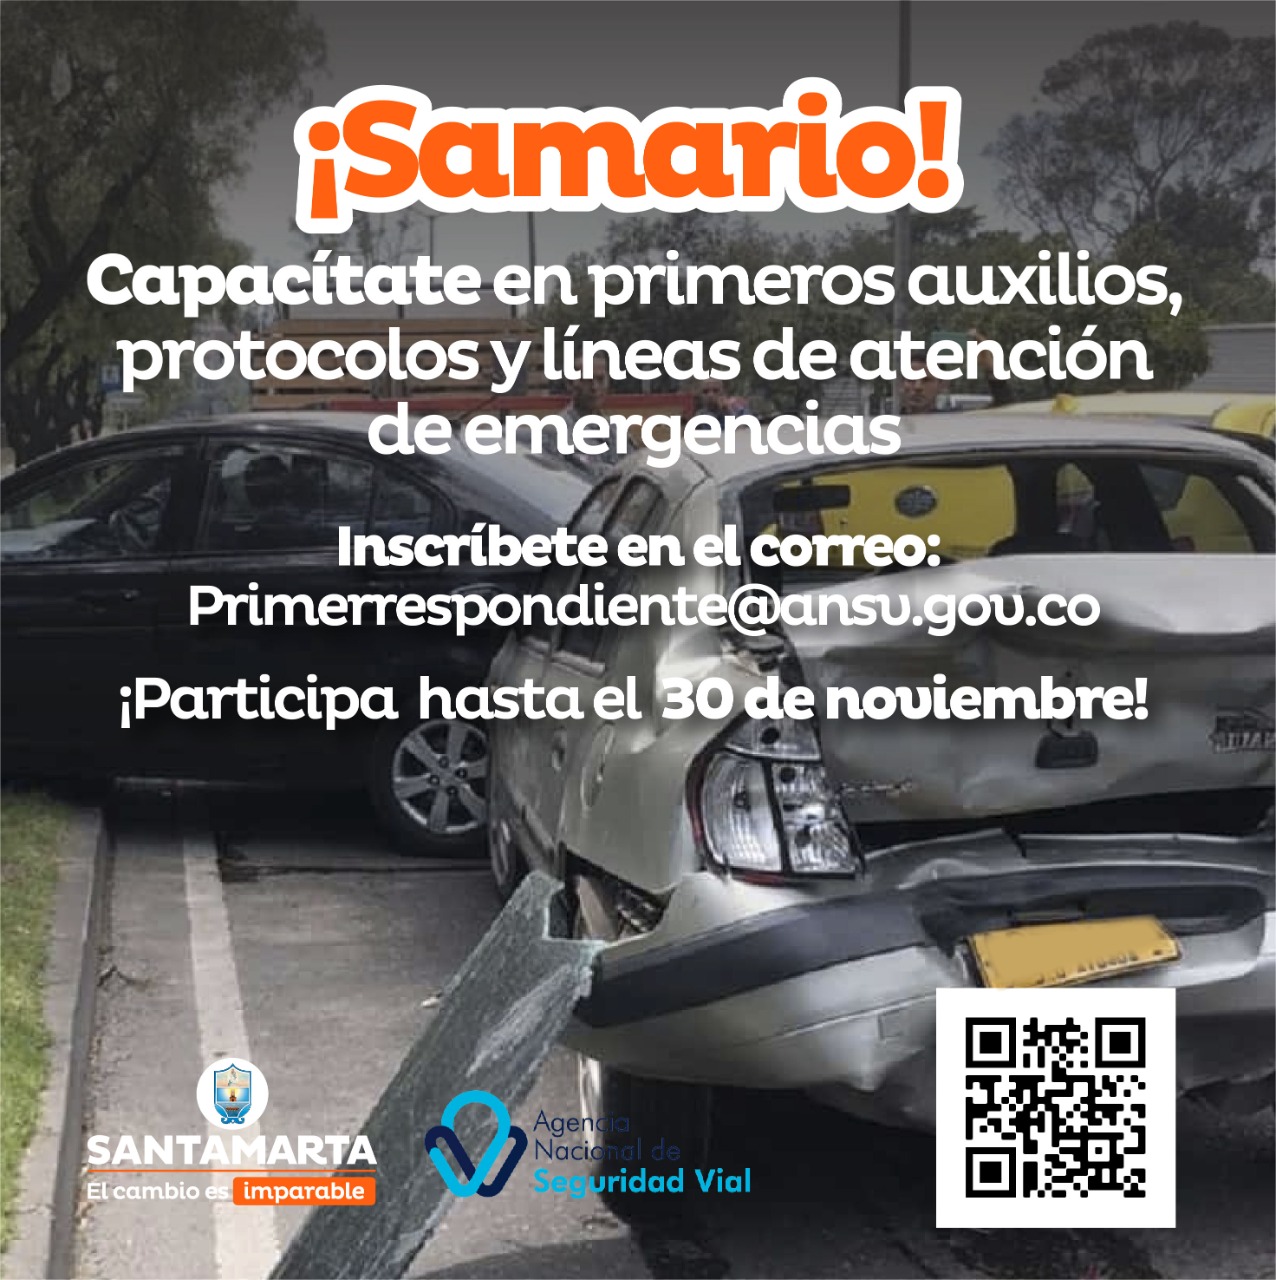 ¡Samario! Capacítate en primero auxilios, protocolos y líneas de emergencia